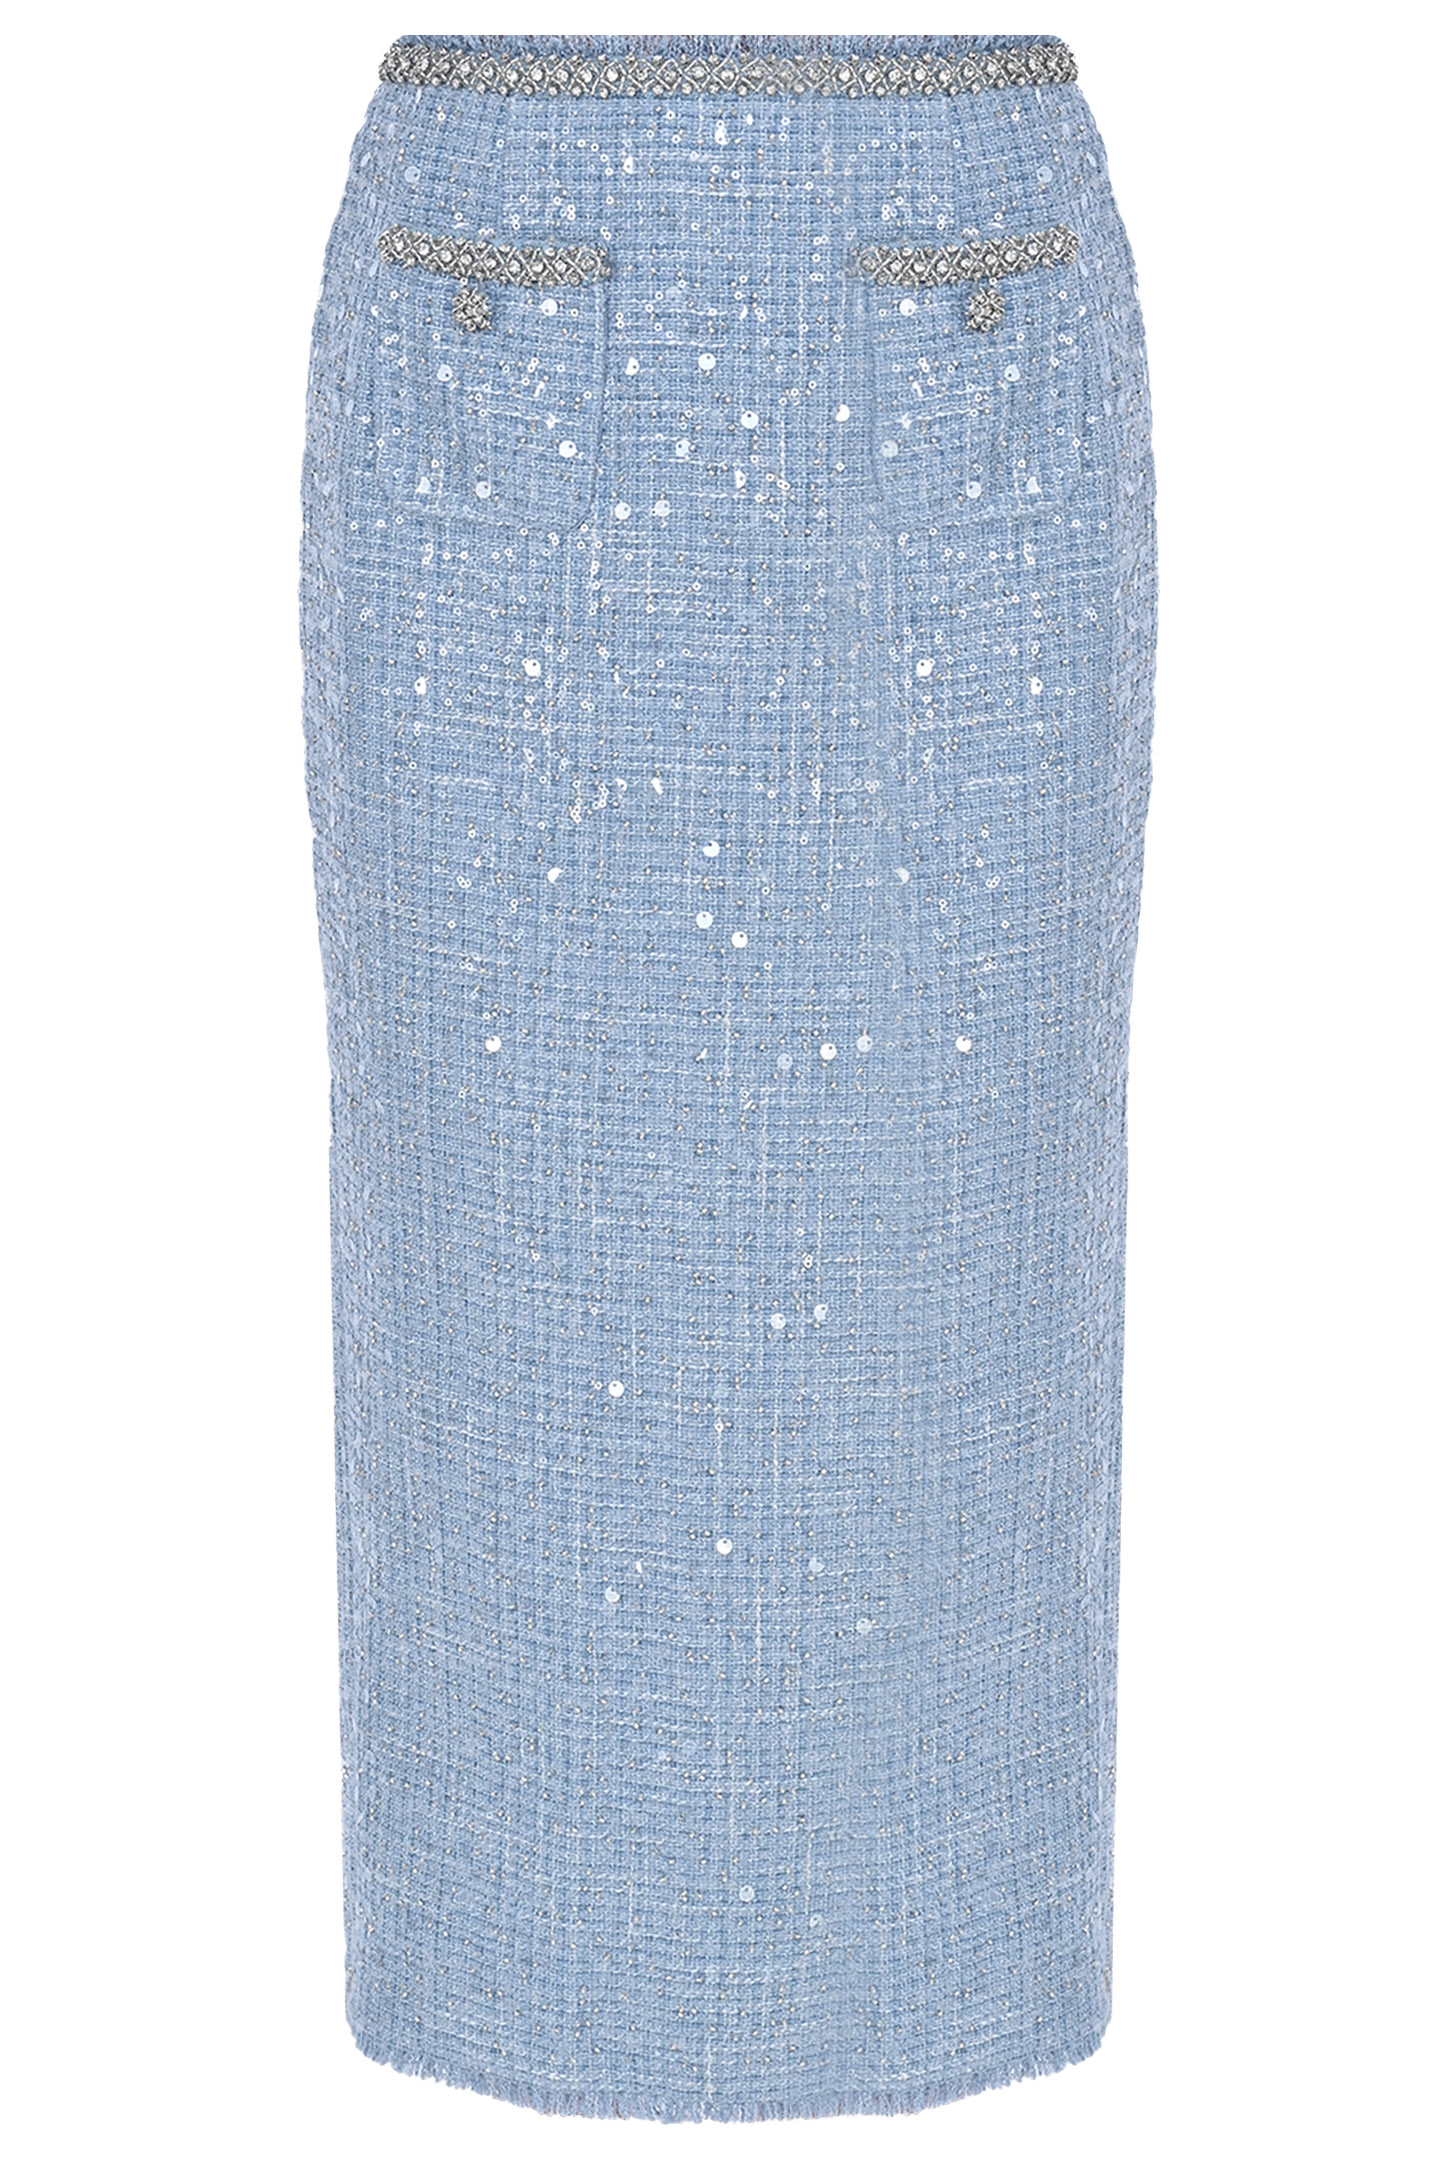 Юбка с пайетками и карманами SELF PORTRAIT RS24052MSKBL, цвет: Голубой, Женский